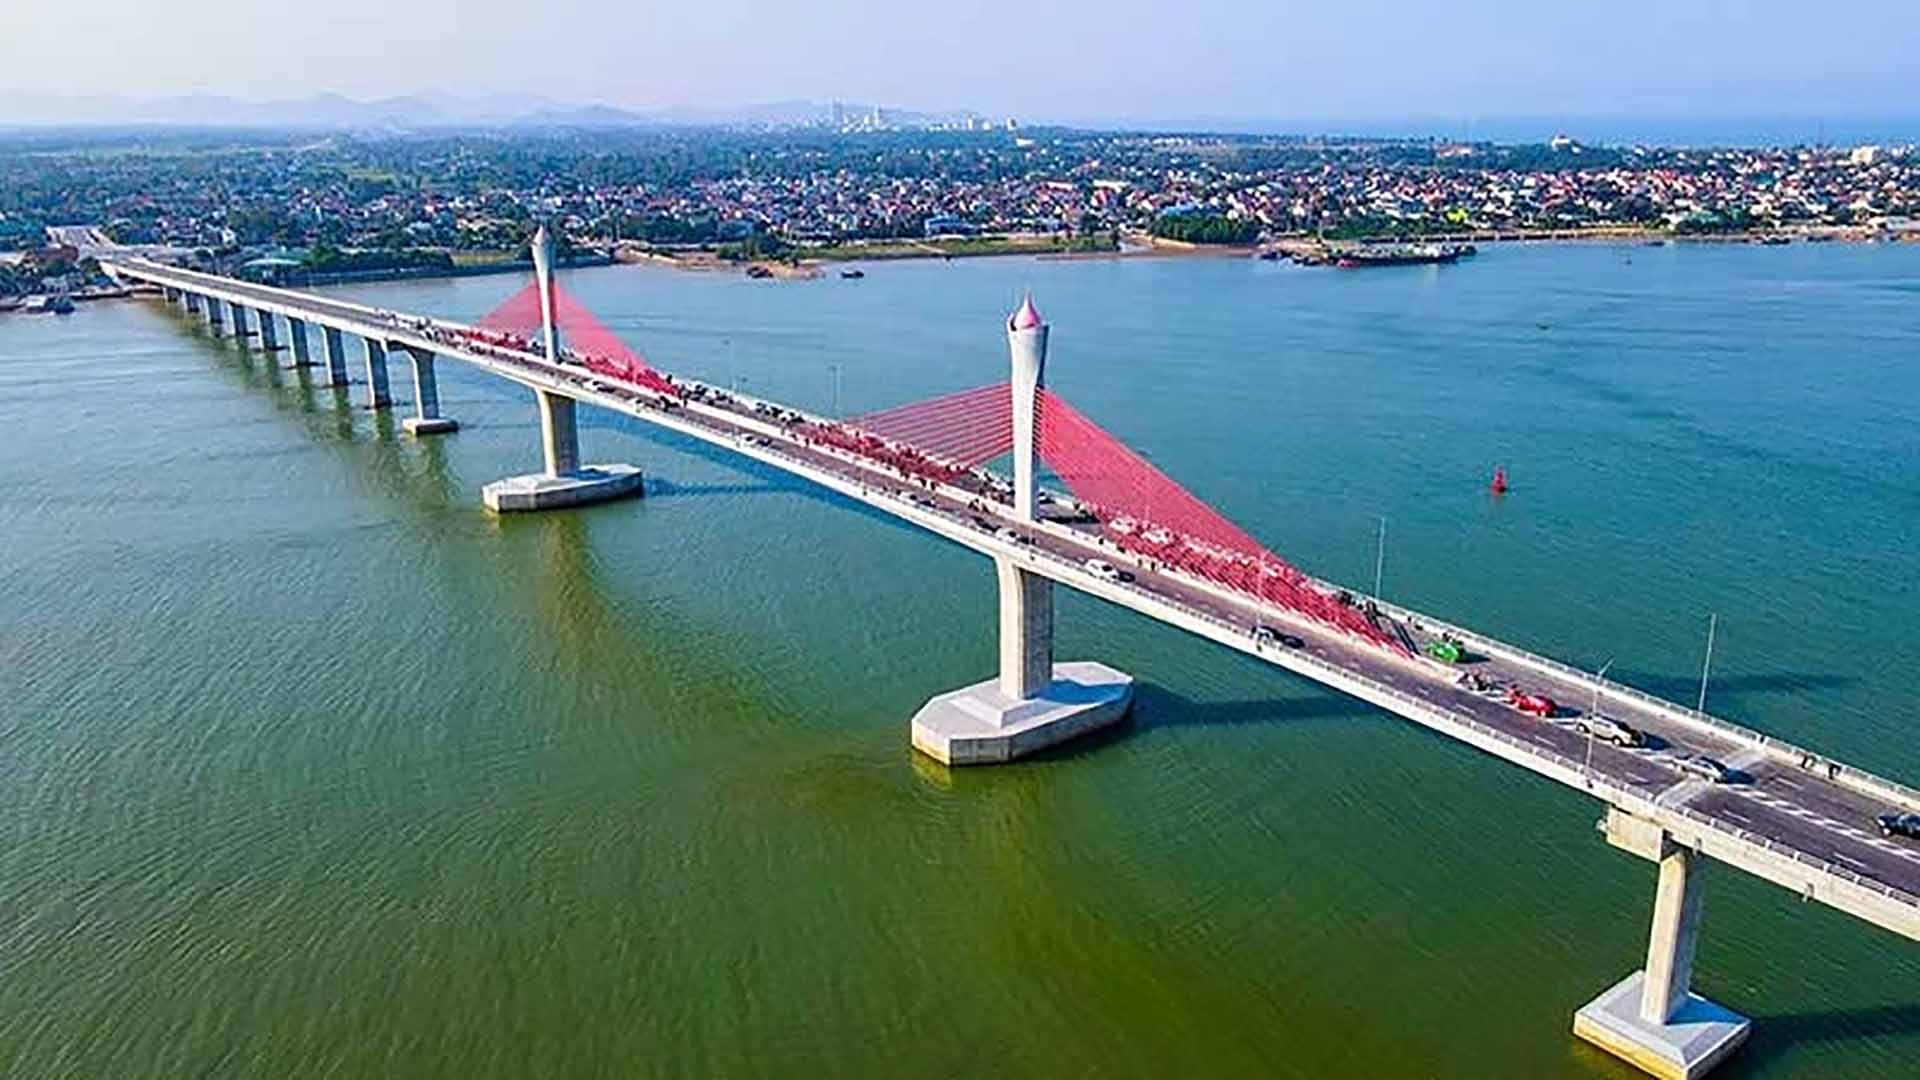 Cầu Cửa Hội bắc qua sông Lam, góp phần phát triển kinh tế-xã hội vùng nam Nghệ An-bắc Hà Tĩnh. (Nguồn: Báo Nhân Dân)